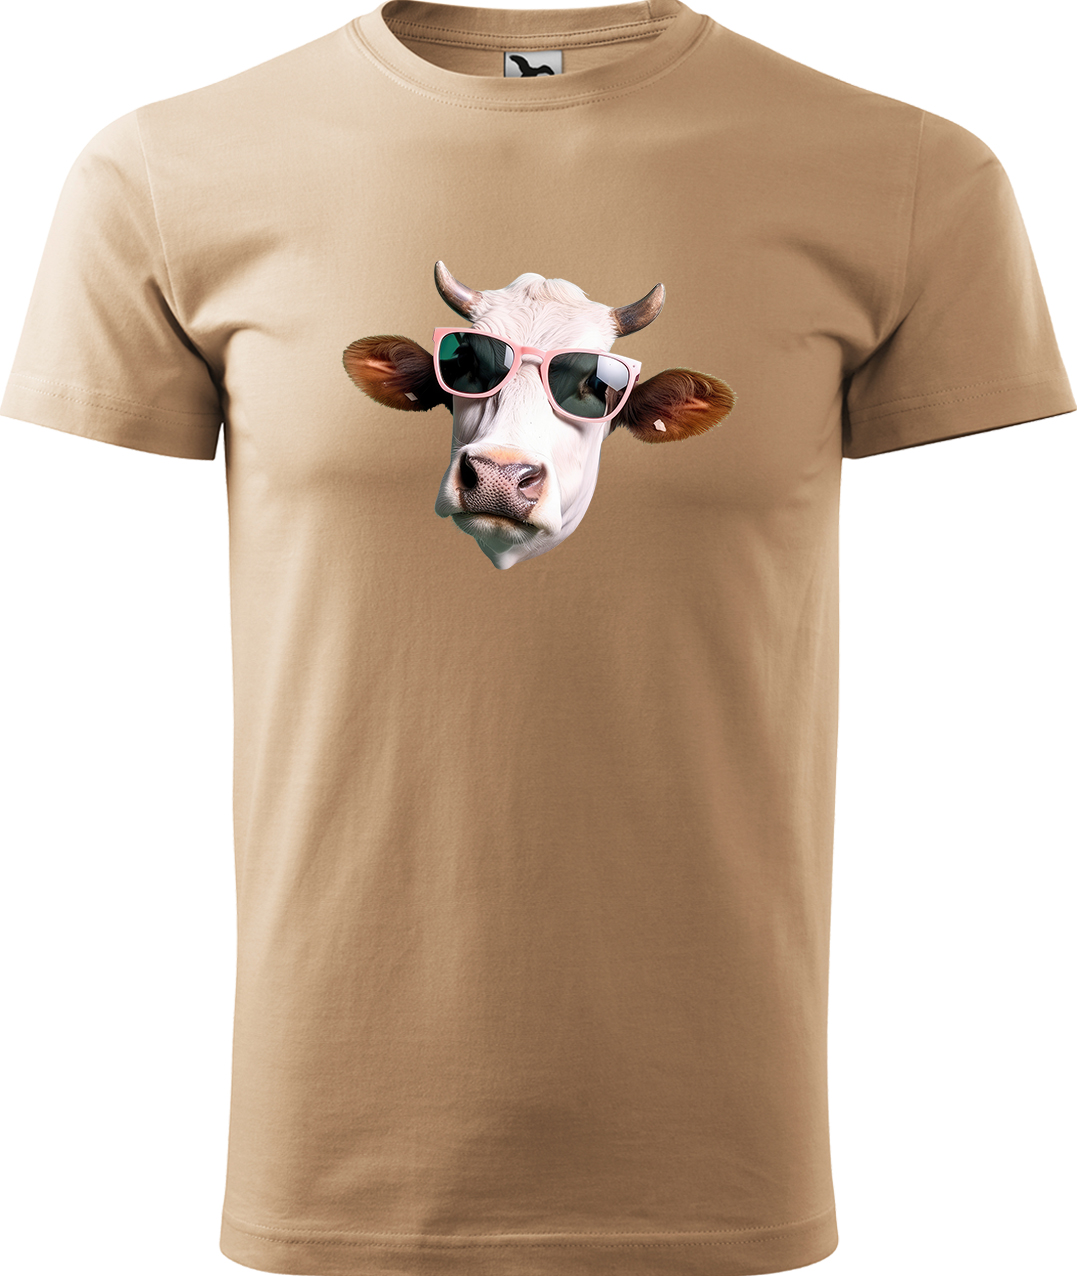 Pánské tričko s krávou - Kráva v brýlích Velikost: XL, Barva: Písková (08), Střih: pánský